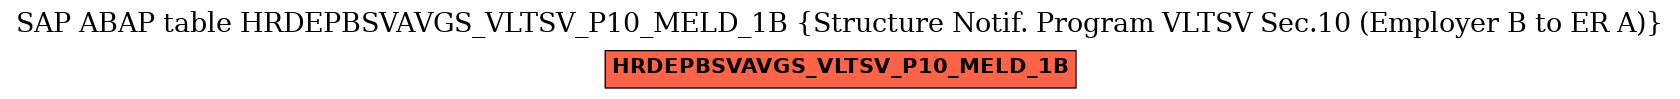 E-R Diagram for table HRDEPBSVAVGS_VLTSV_P10_MELD_1B (Structure Notif. Program VLTSV Sec.10 (Employer B to ER A))